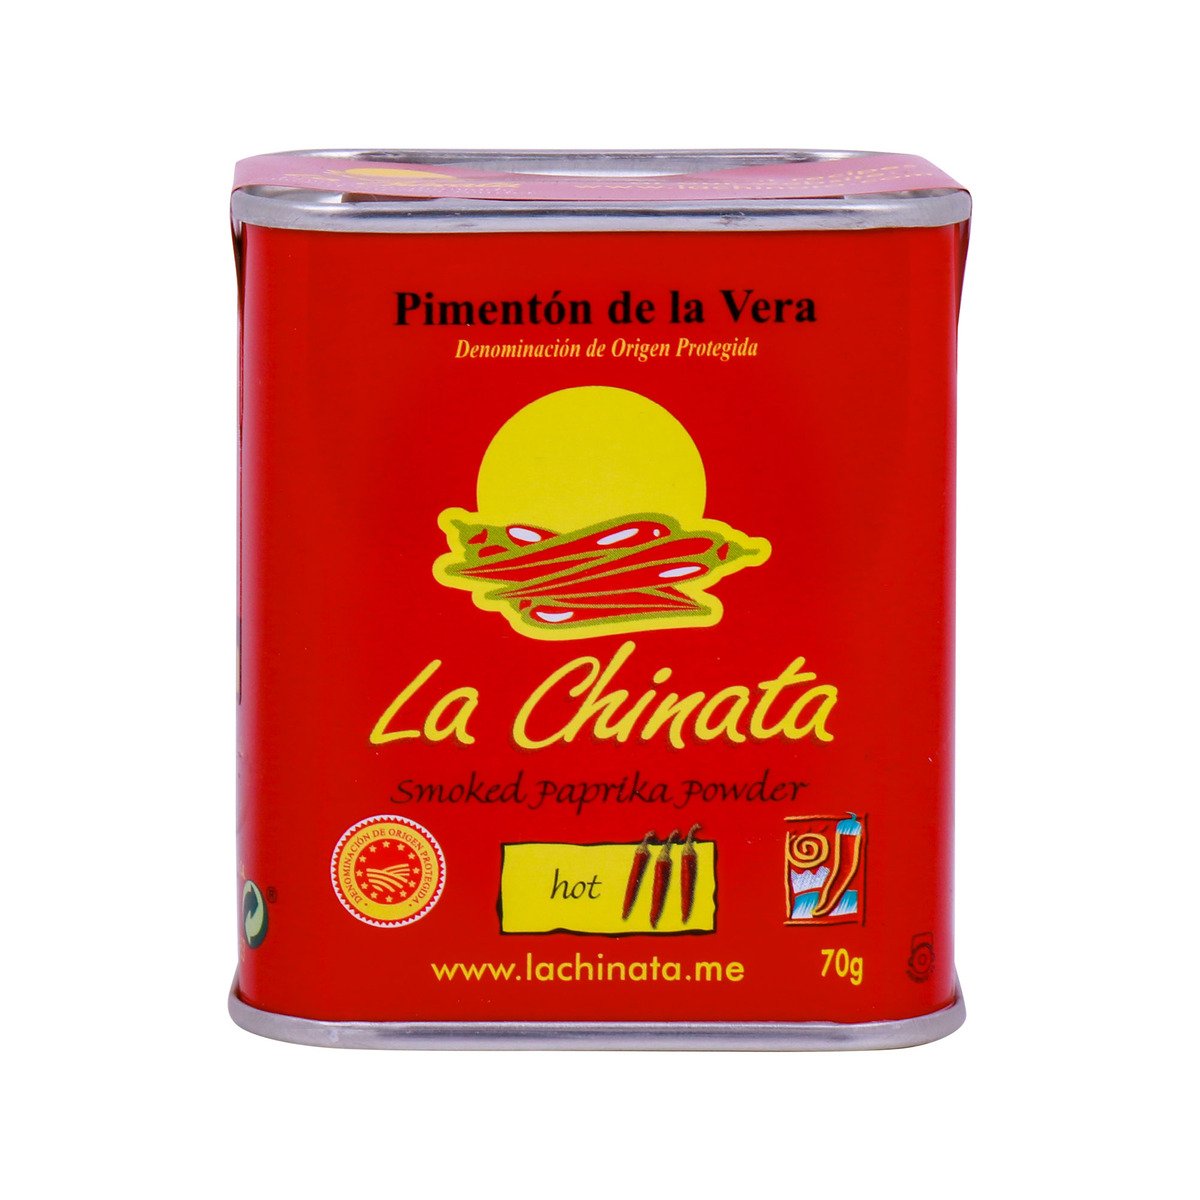 La Chinata Smoked Paprika Powder Hot 70 g